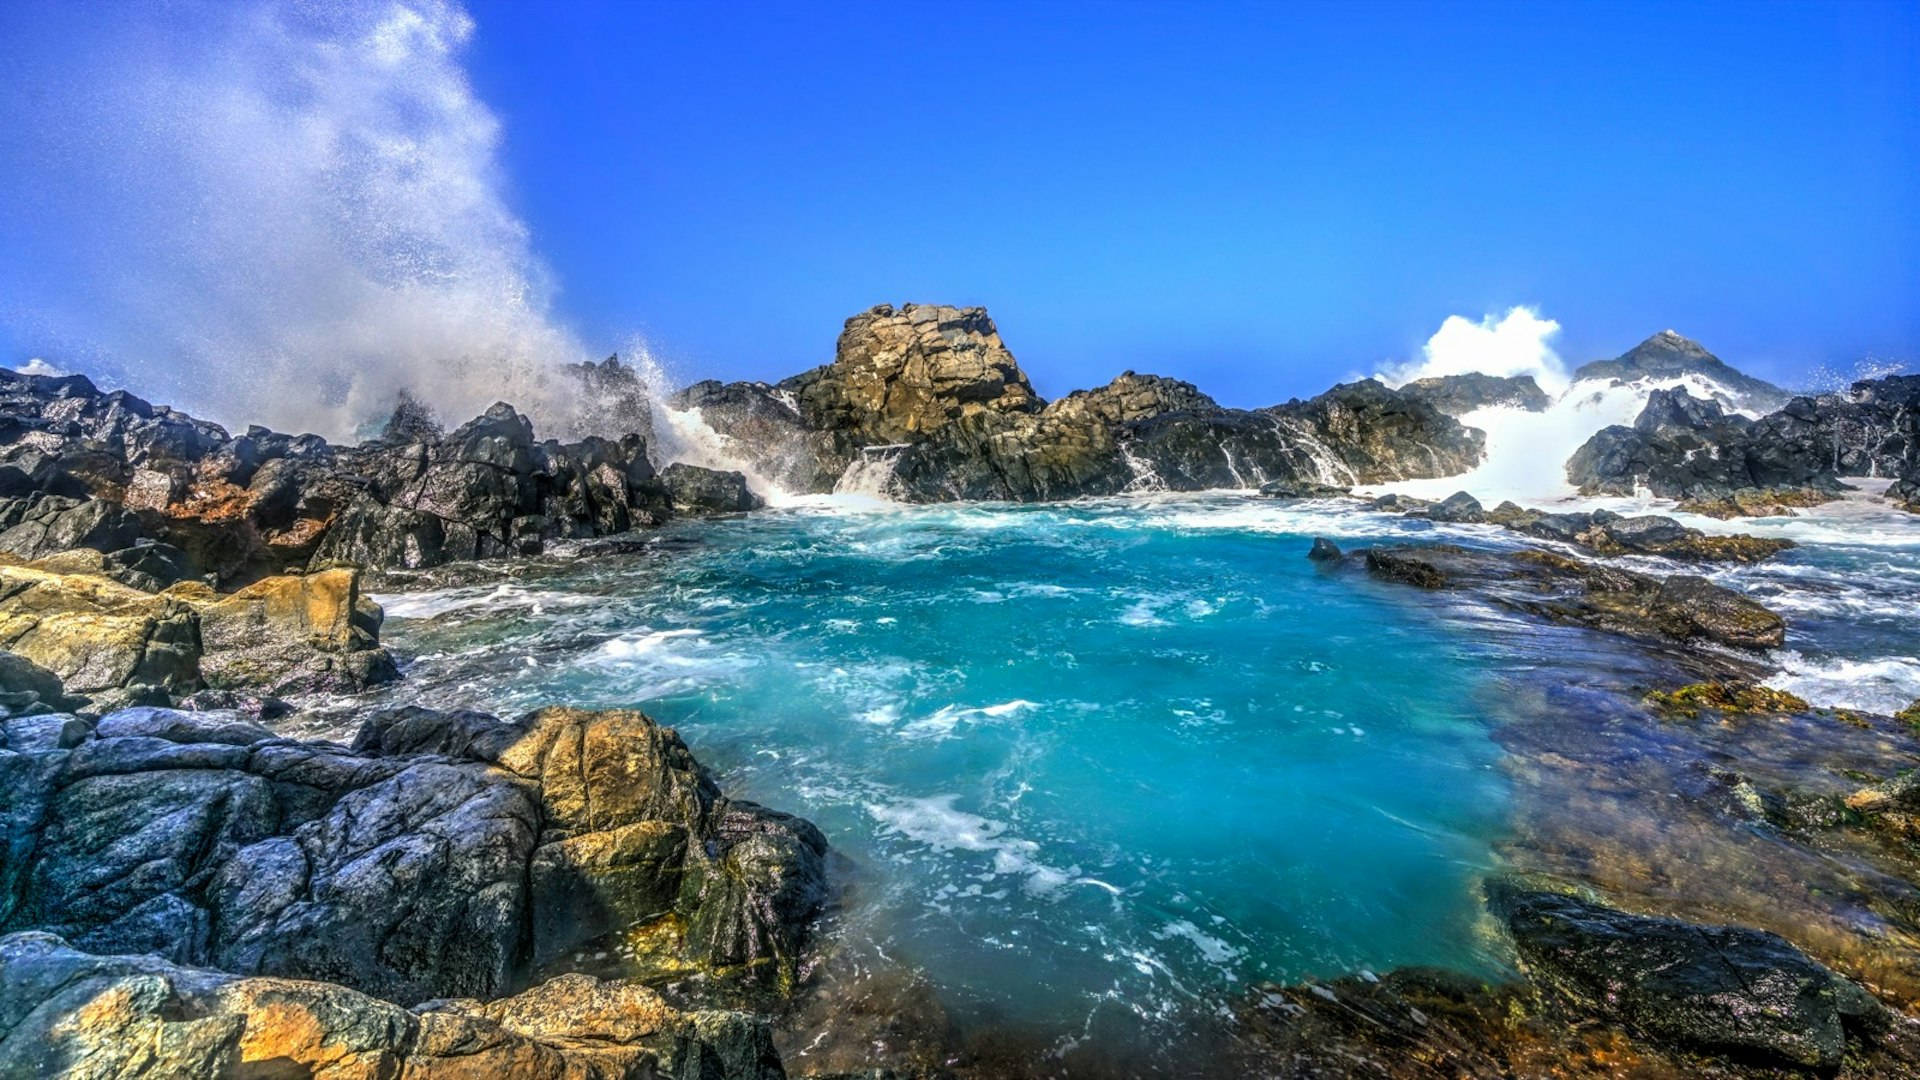 En våg slår mot klippan nära den naturliga poolen på Aruba © Chiragsinh Yadav / Shutterstock